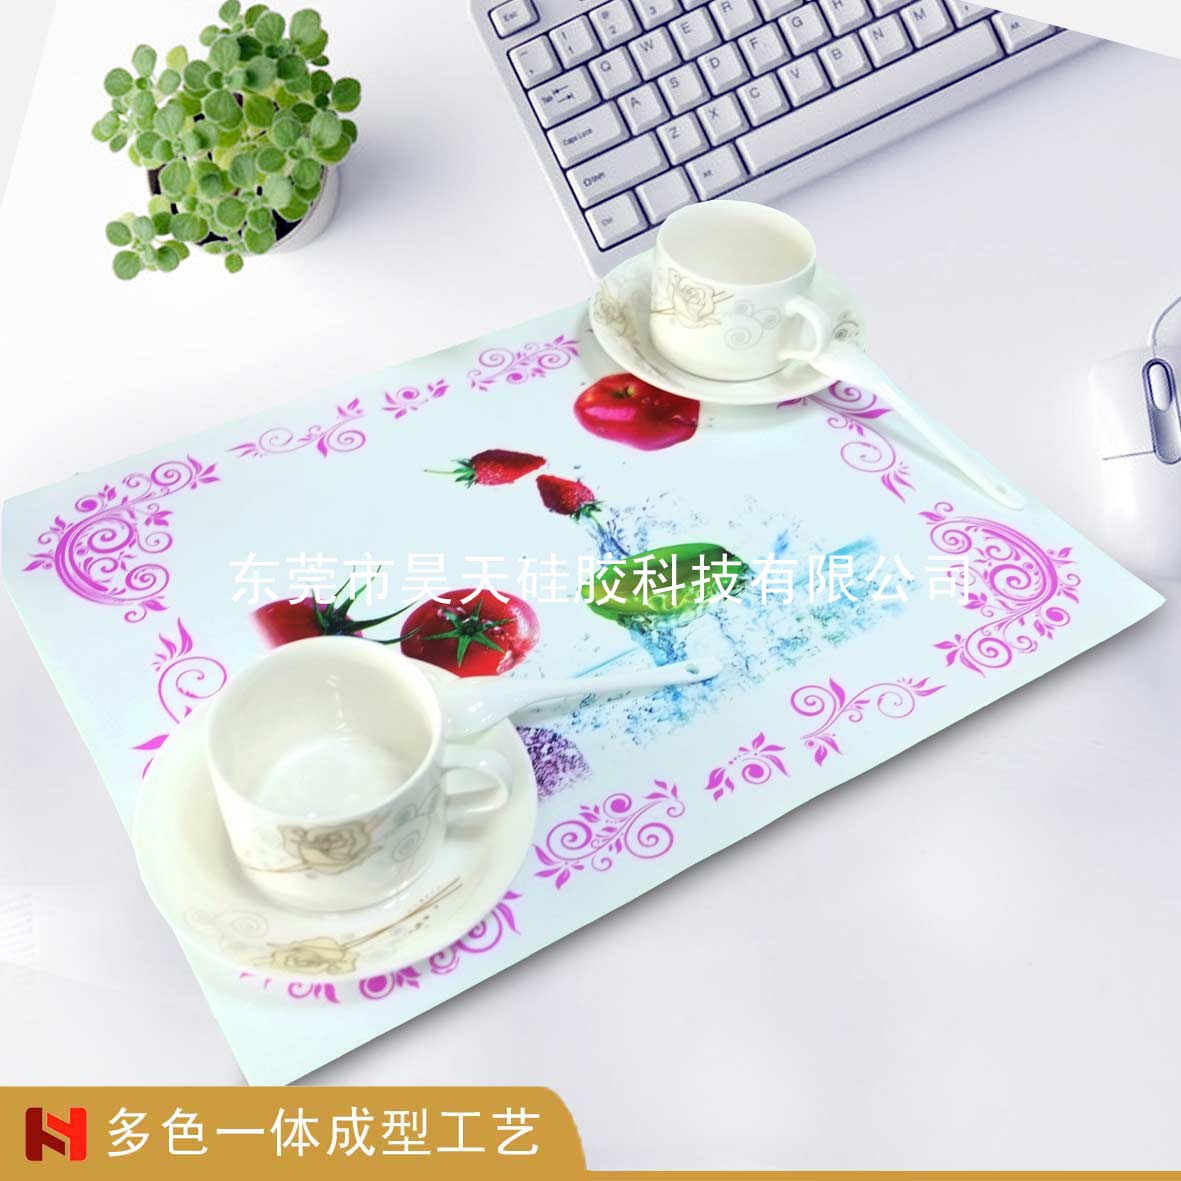 上海硅胶餐垫定制厂家哪家能做出渐变色的效果